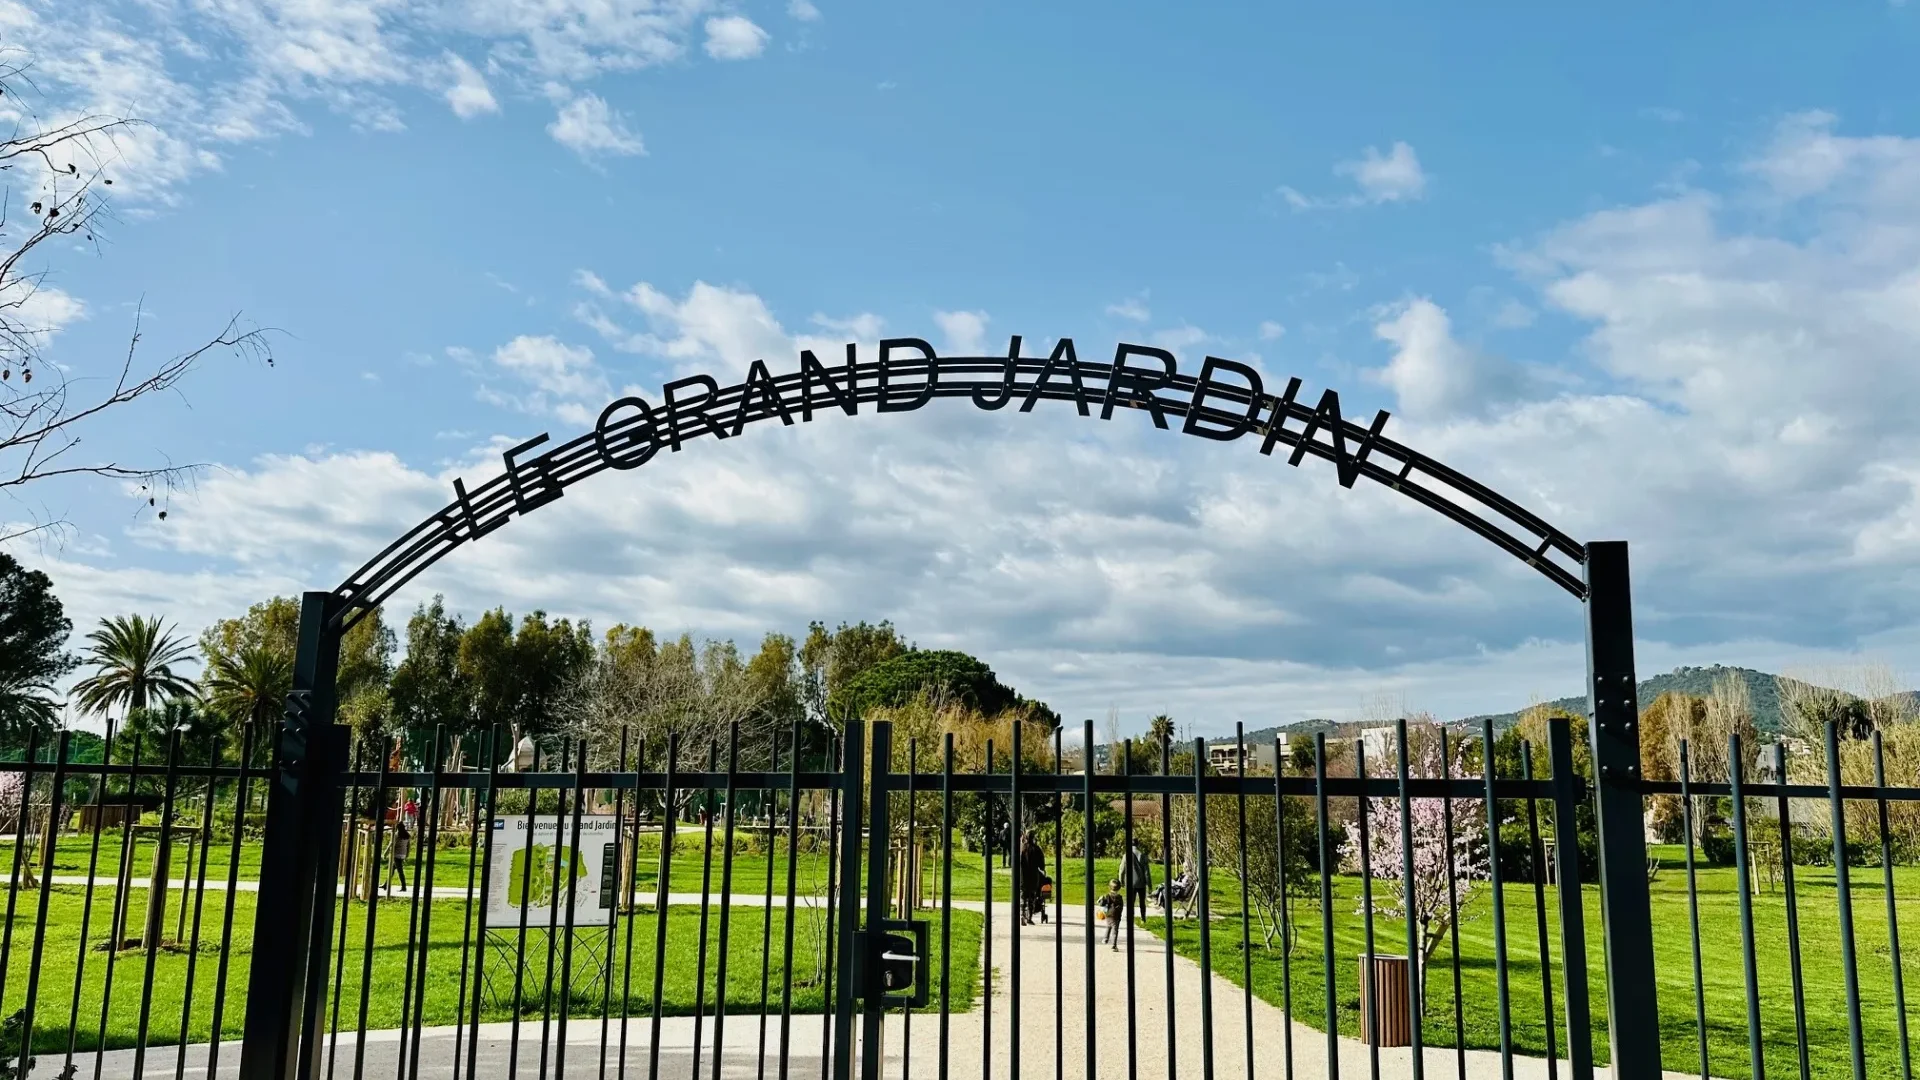 The Grand Jardin Le Lavandou